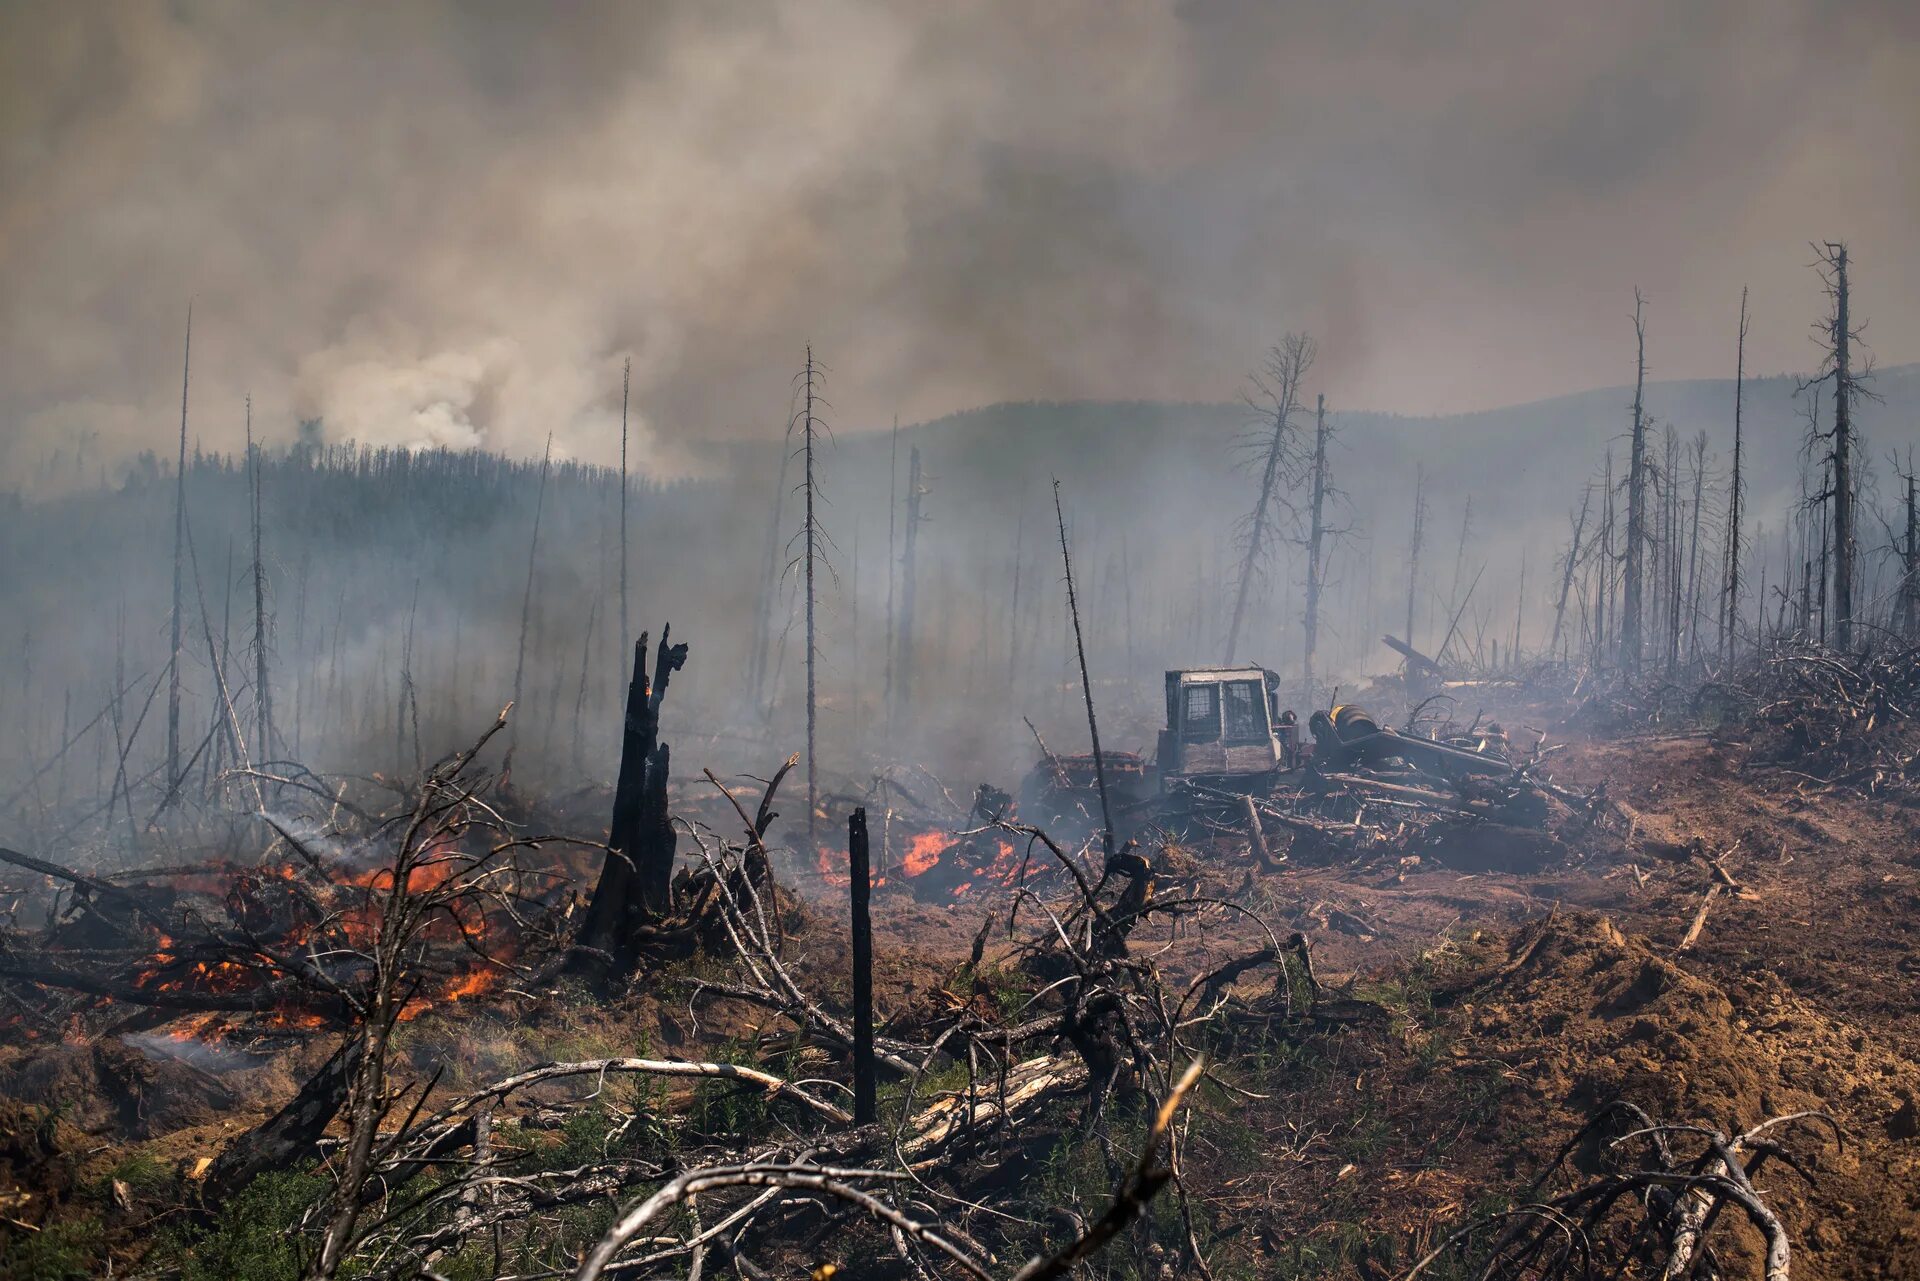 Последствия лесных пожаров. Последствия пожара в лесу. Лес после пожара. После лесного пожара. Расширенные пожары